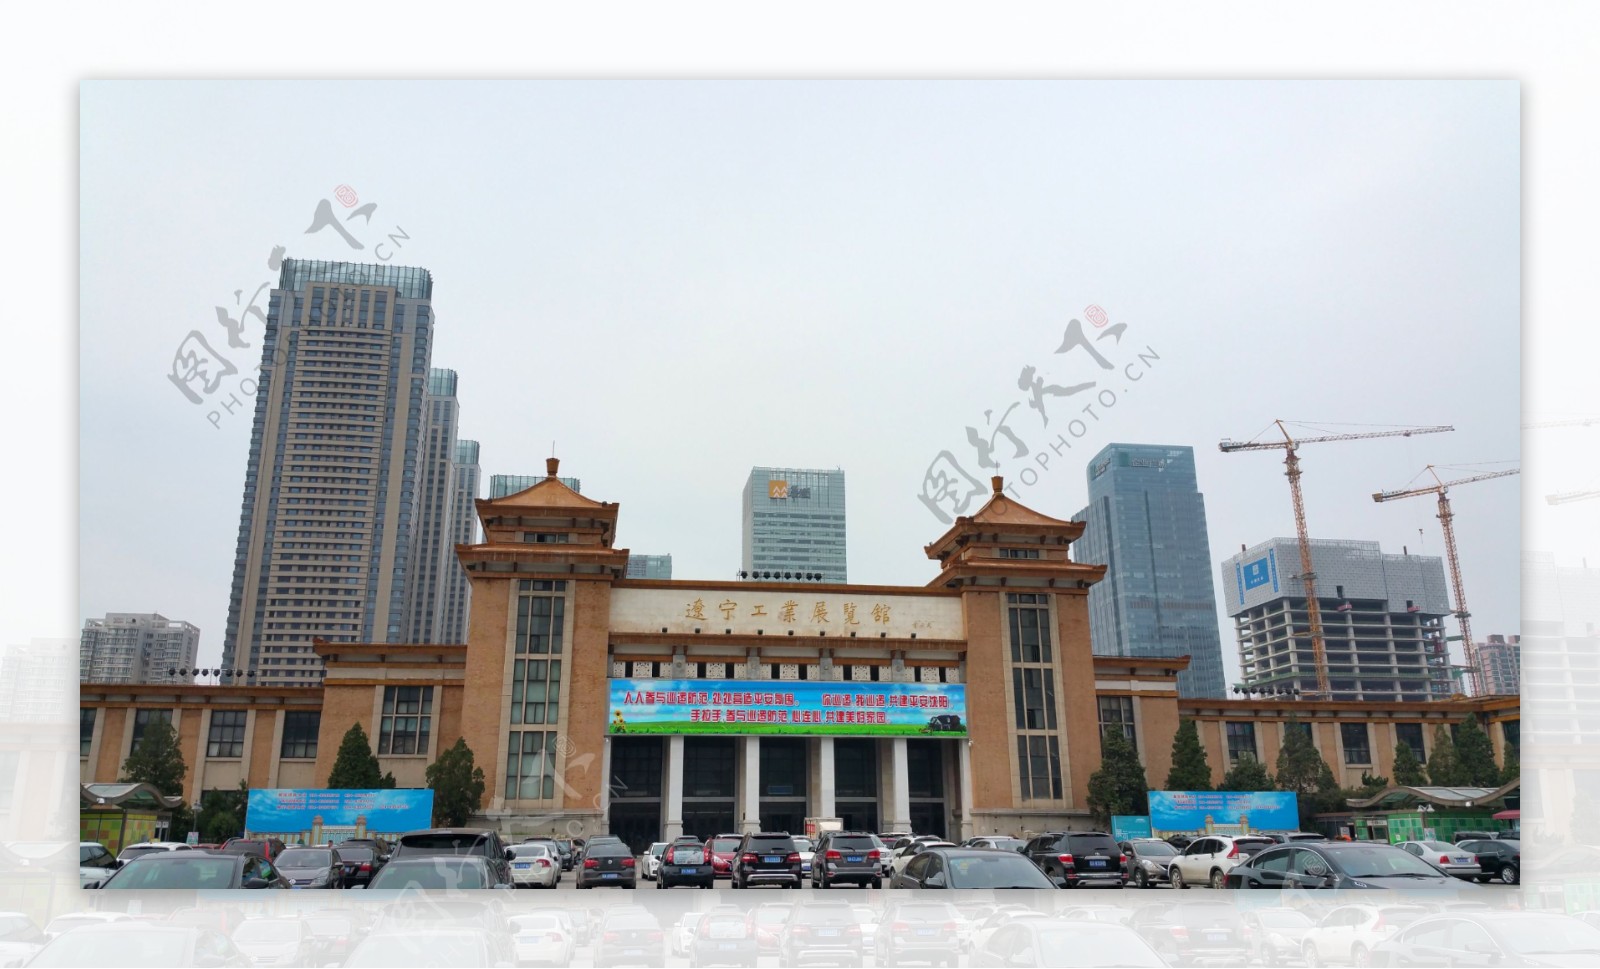 辽宁工业展览馆的建筑图片